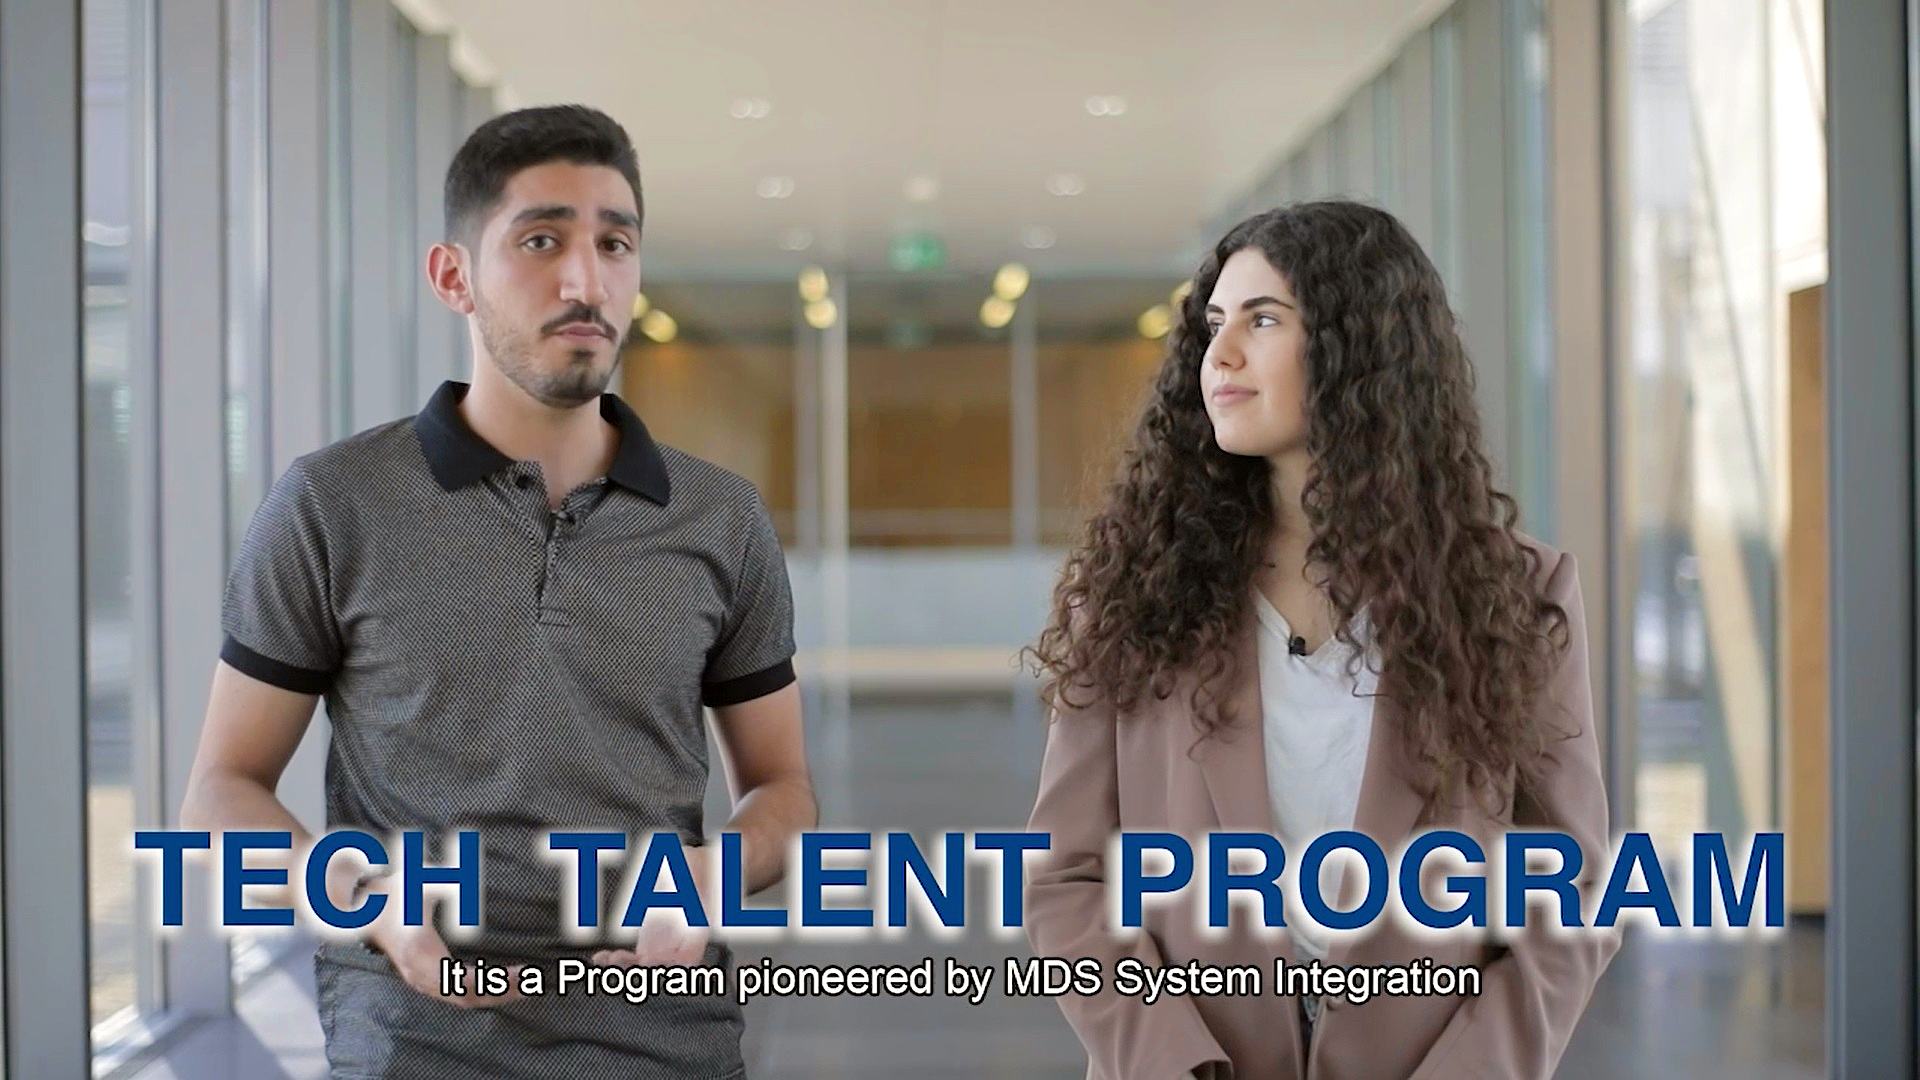 deux jeunes vus dans une vidéo avec l’inscription Tech Talent Program sur la partie inférieure de l'écran